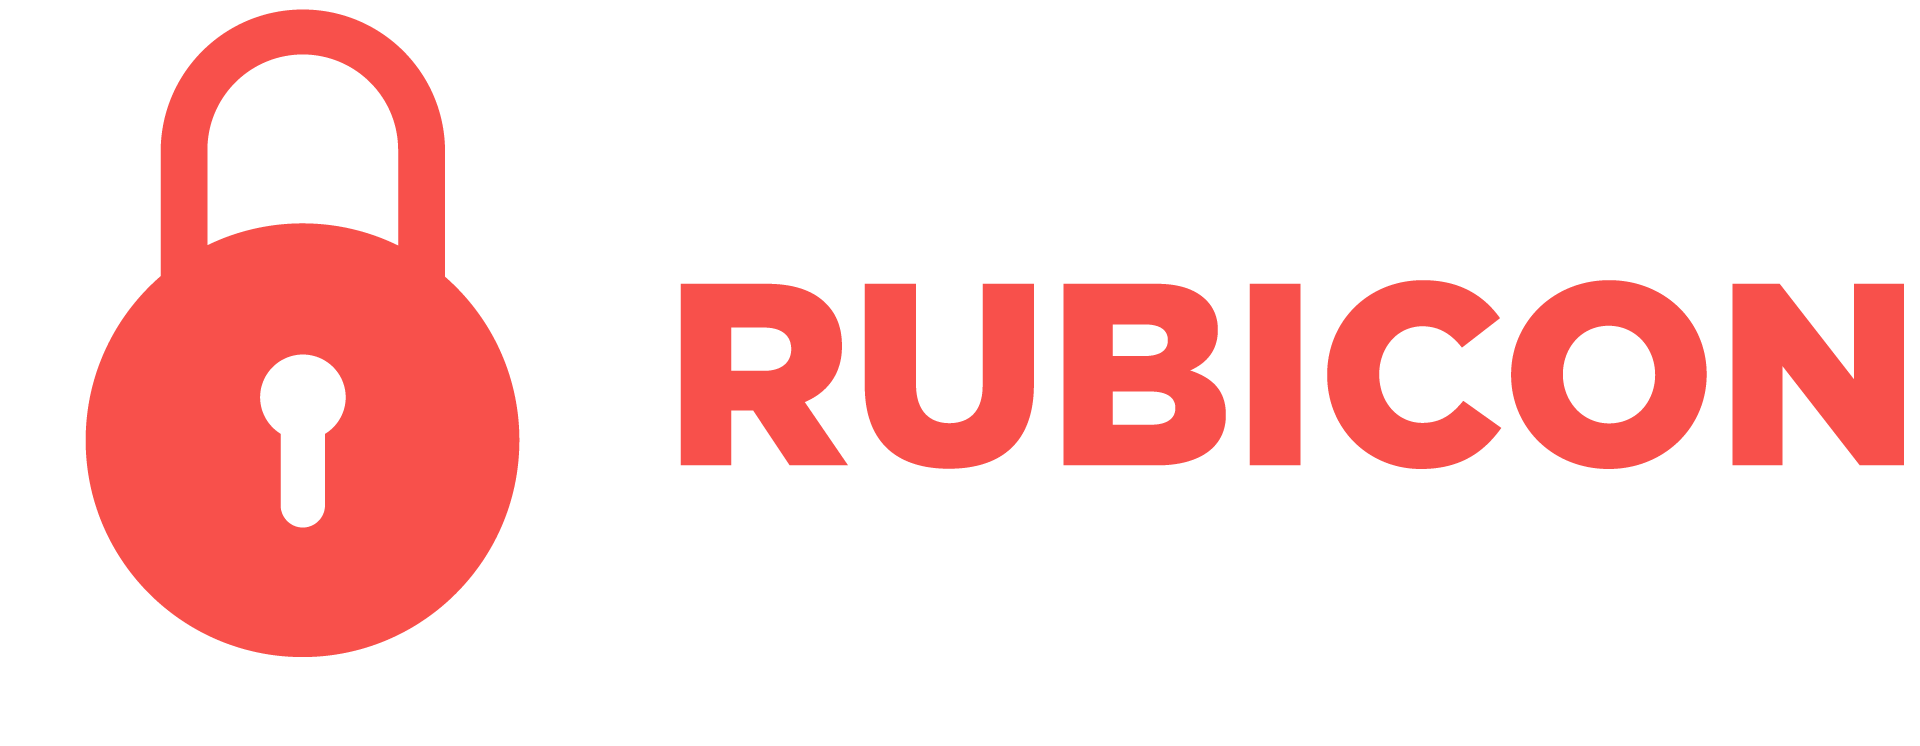 Rubicon Locksmith Artesia 